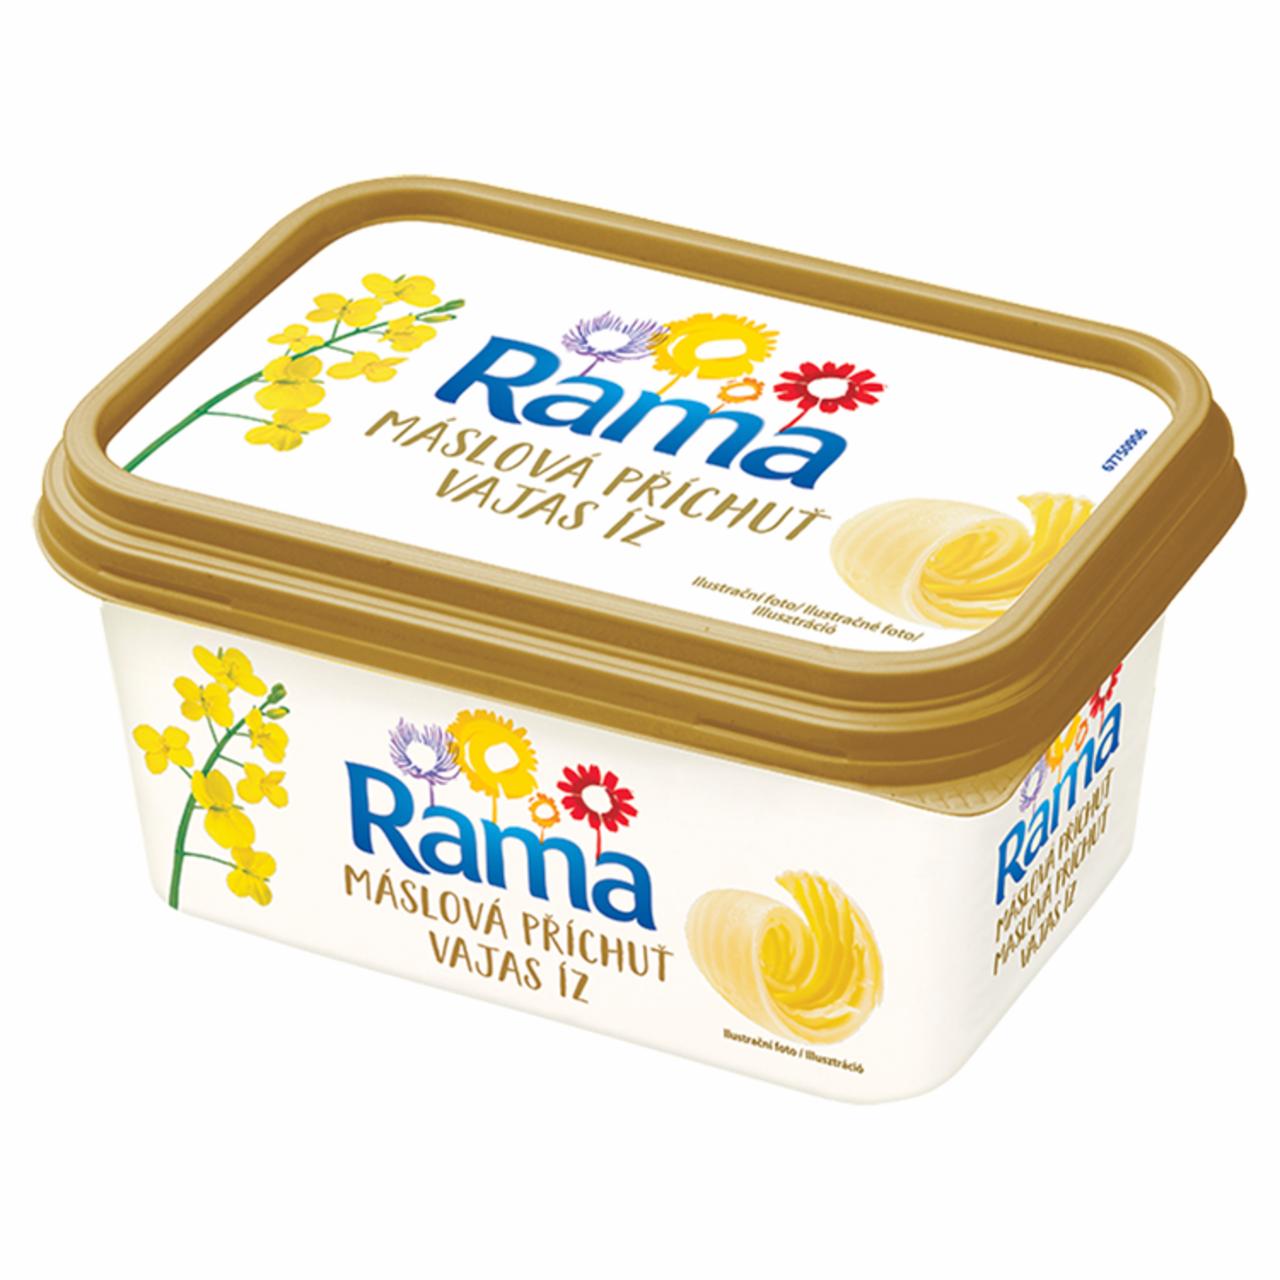 Képek - Rama Gold vajas íz csökkentett zsírtartalmú margarin 400 g